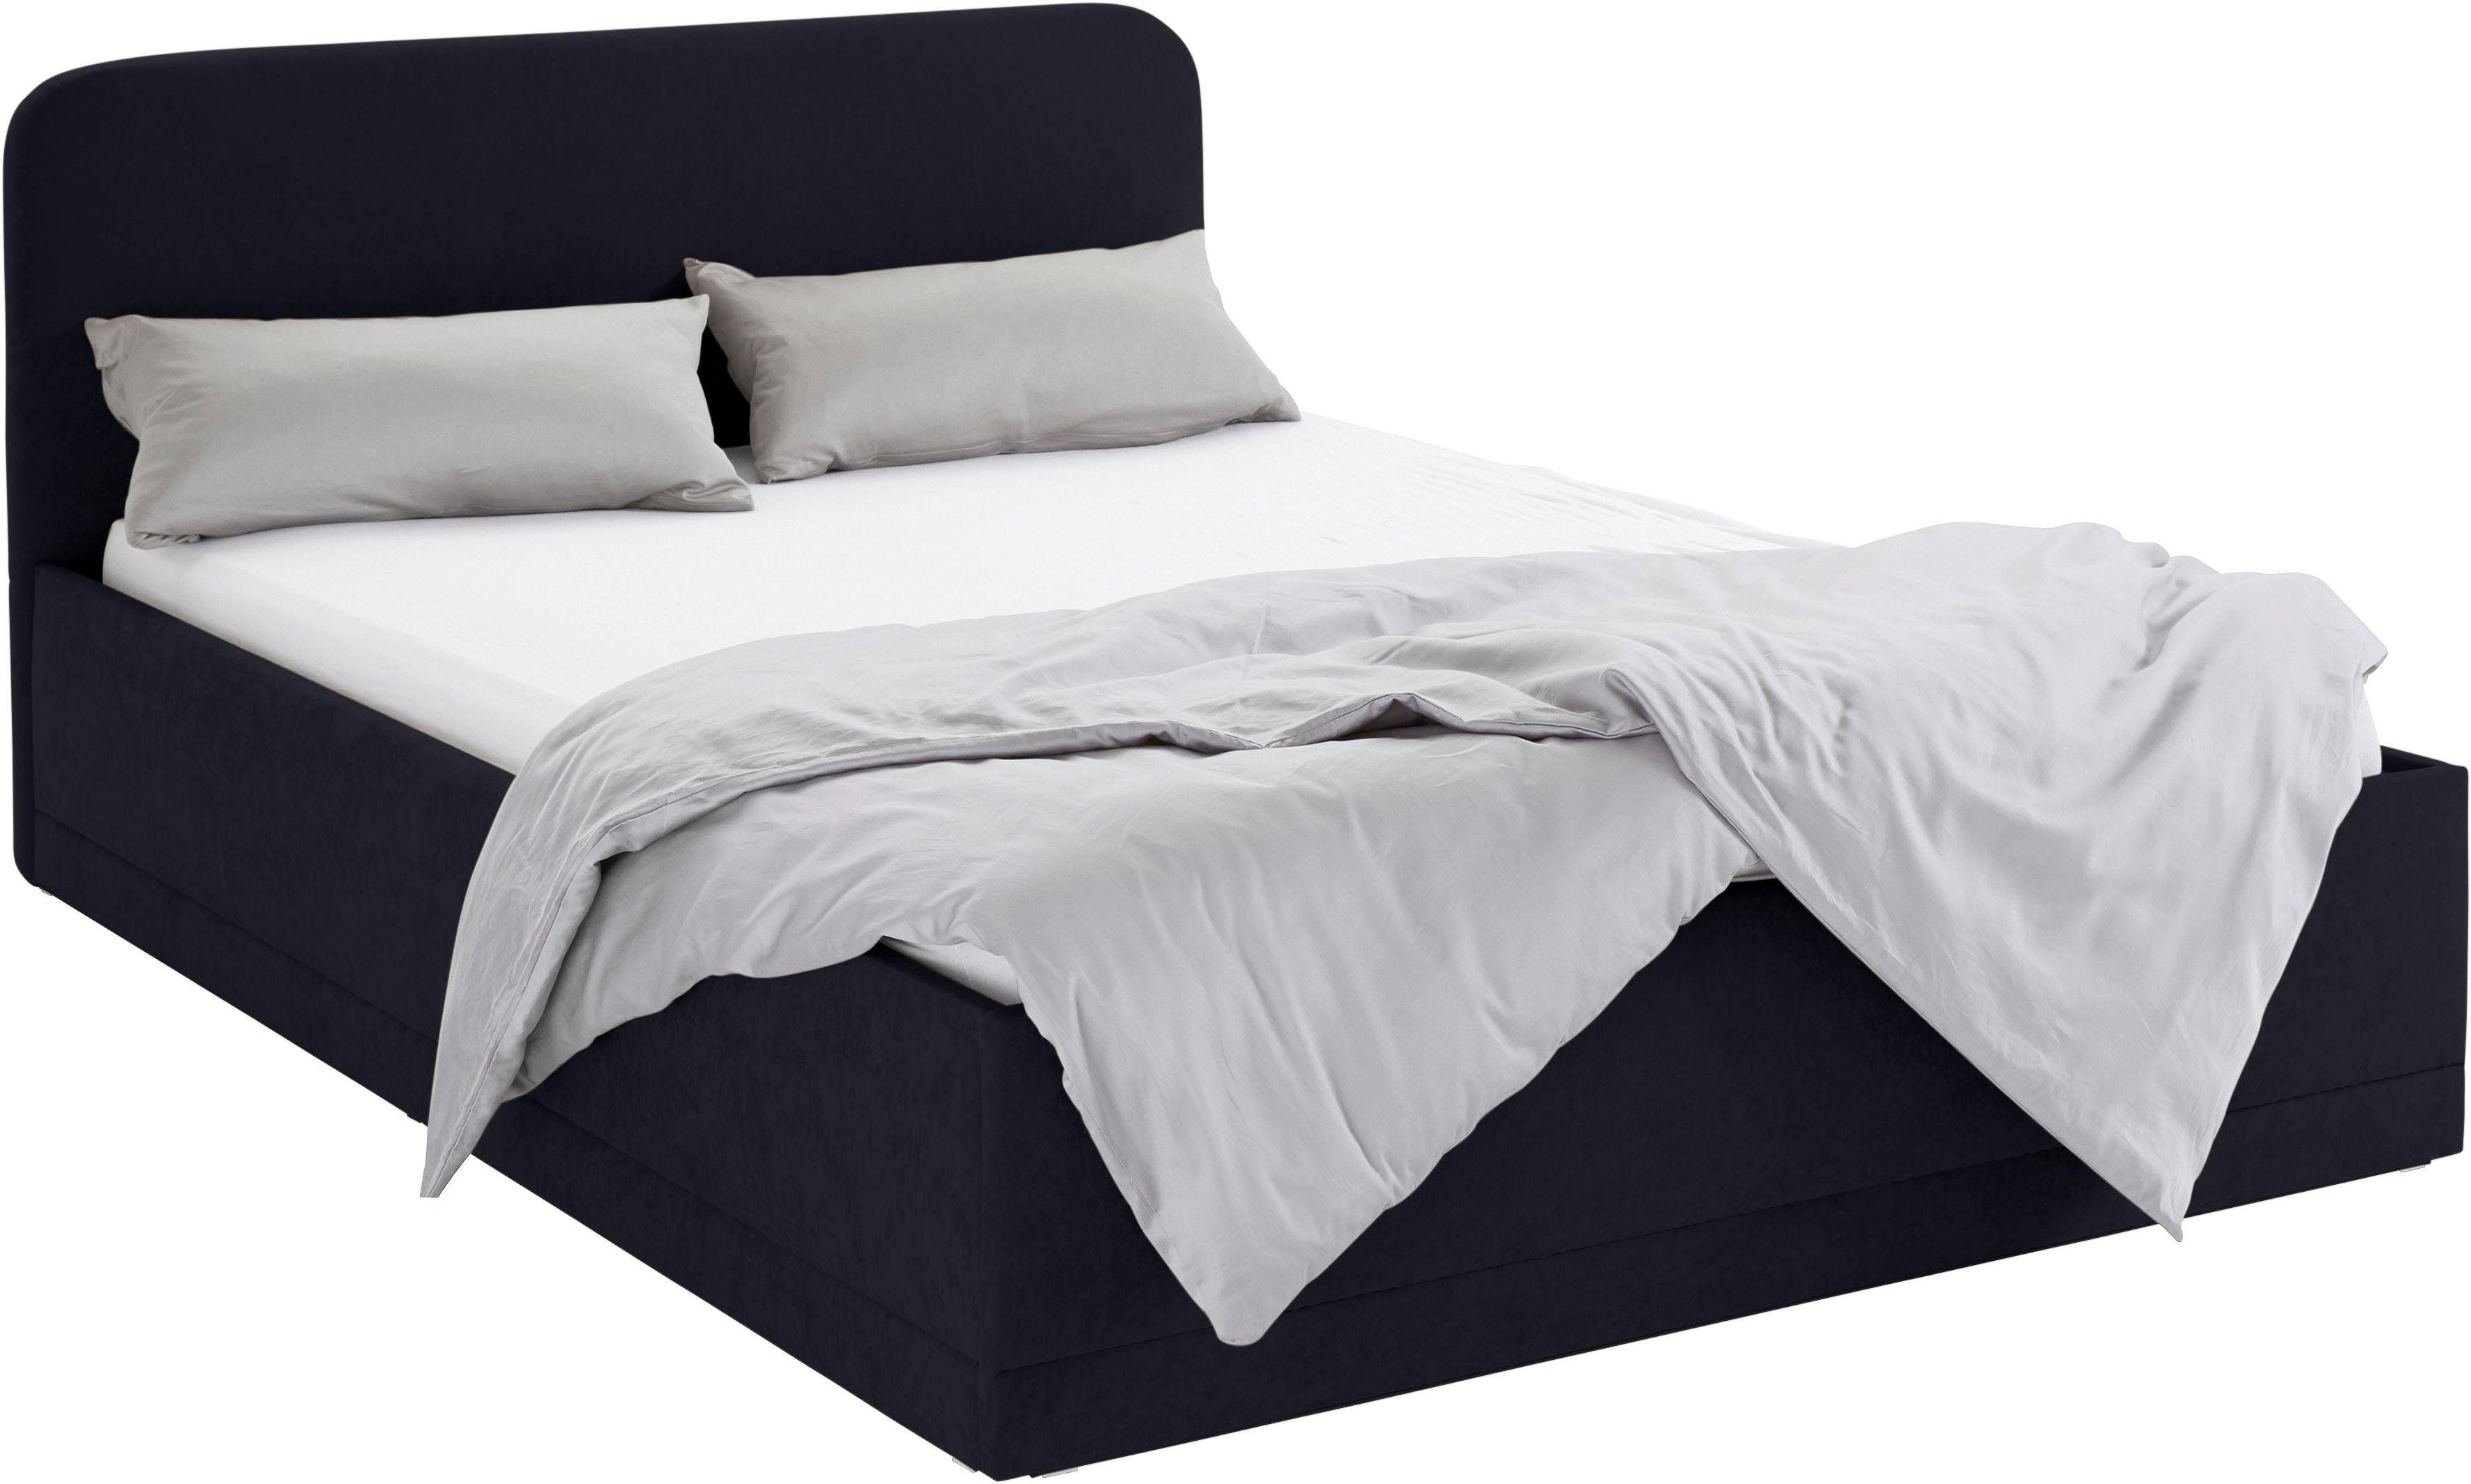 Westfalia Schlafkomfort Polsterbett, inkl. mit Bettkasten Matratze Ausführung bei